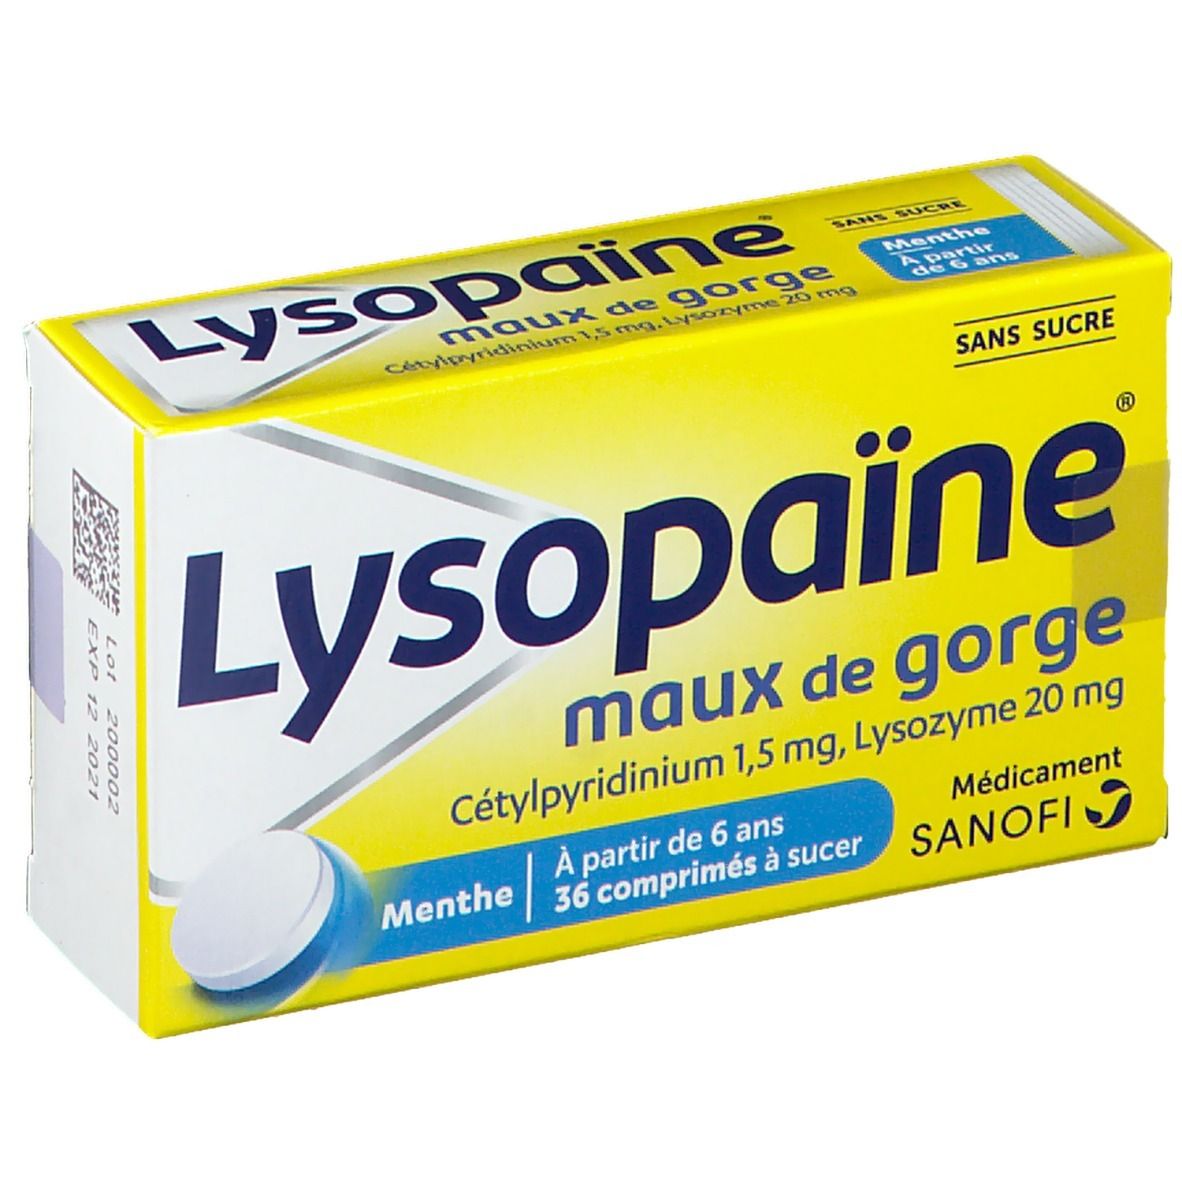 Lysopaïne® maux de gorge s/s